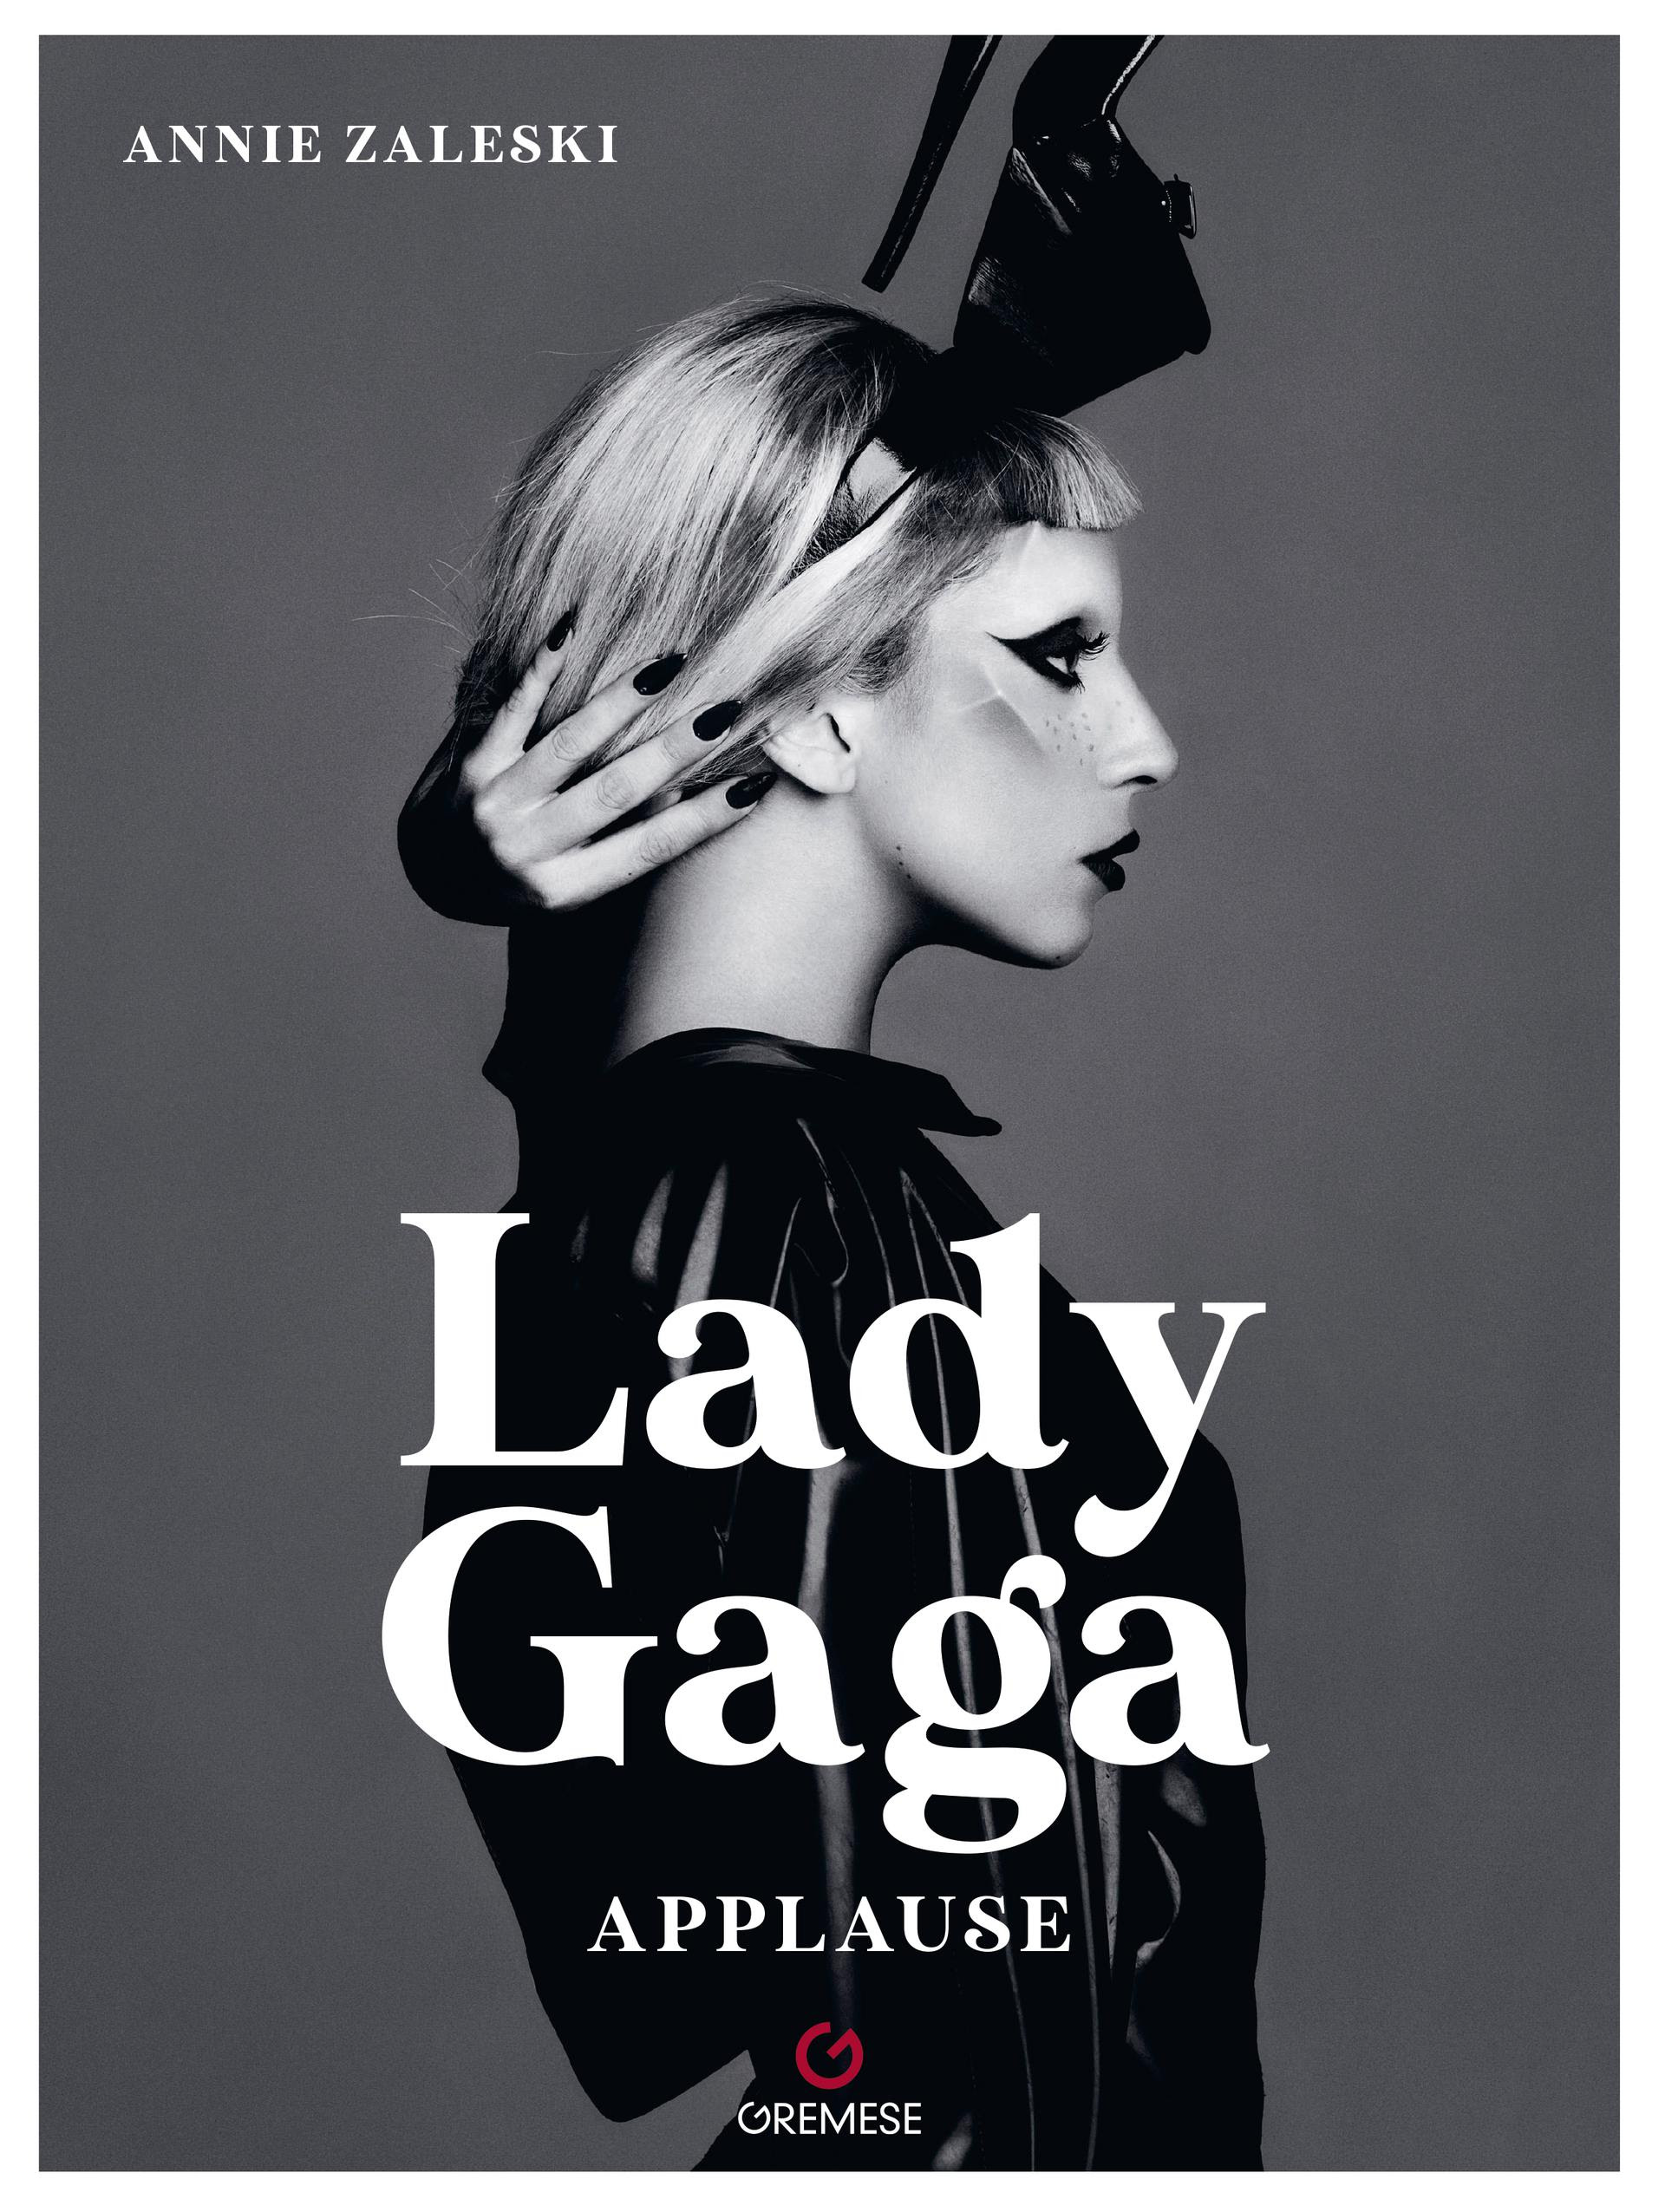 Lady Gaga nuovo album e tour - immagini